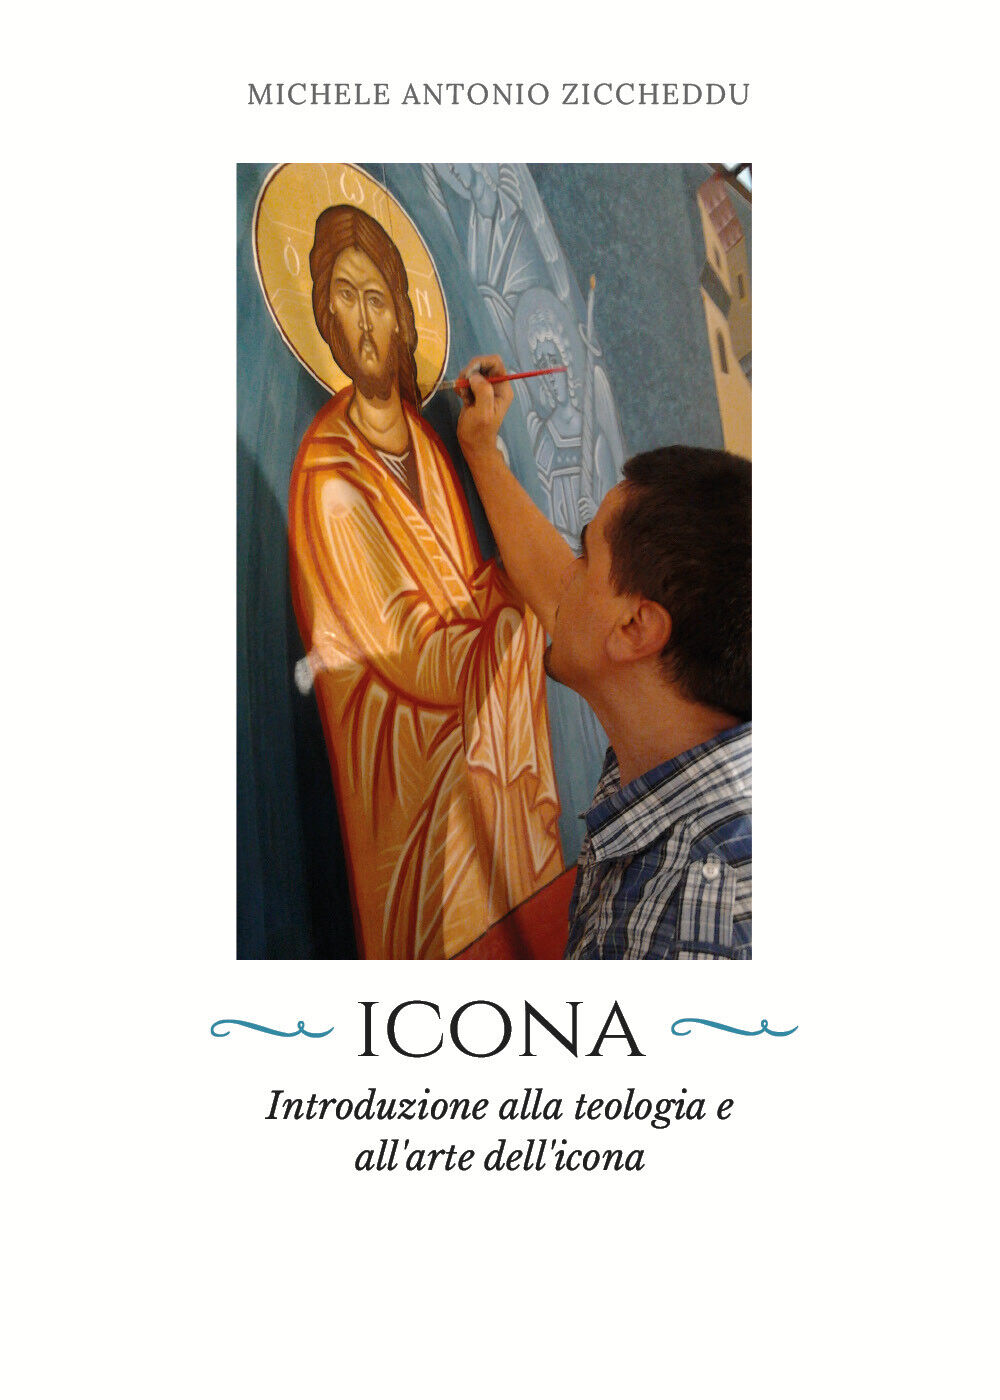 Icona. Introduzione alla teologia e alL'arte delL'icona, M. A. Ziccheddu, 2018